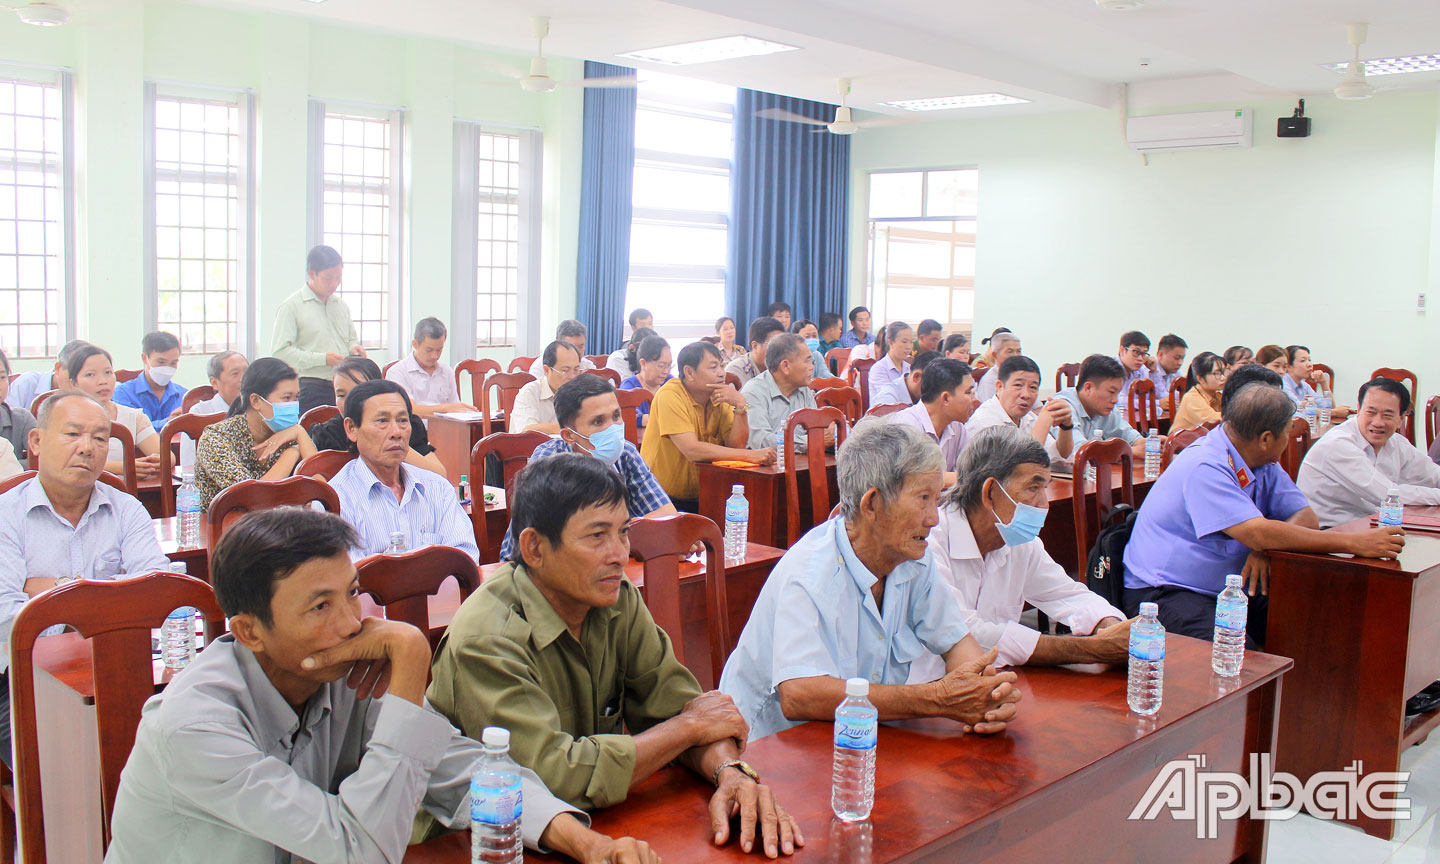 Quang cảnh buổi tiếp xúc cử tri tại huyện Tân Phú Đông.